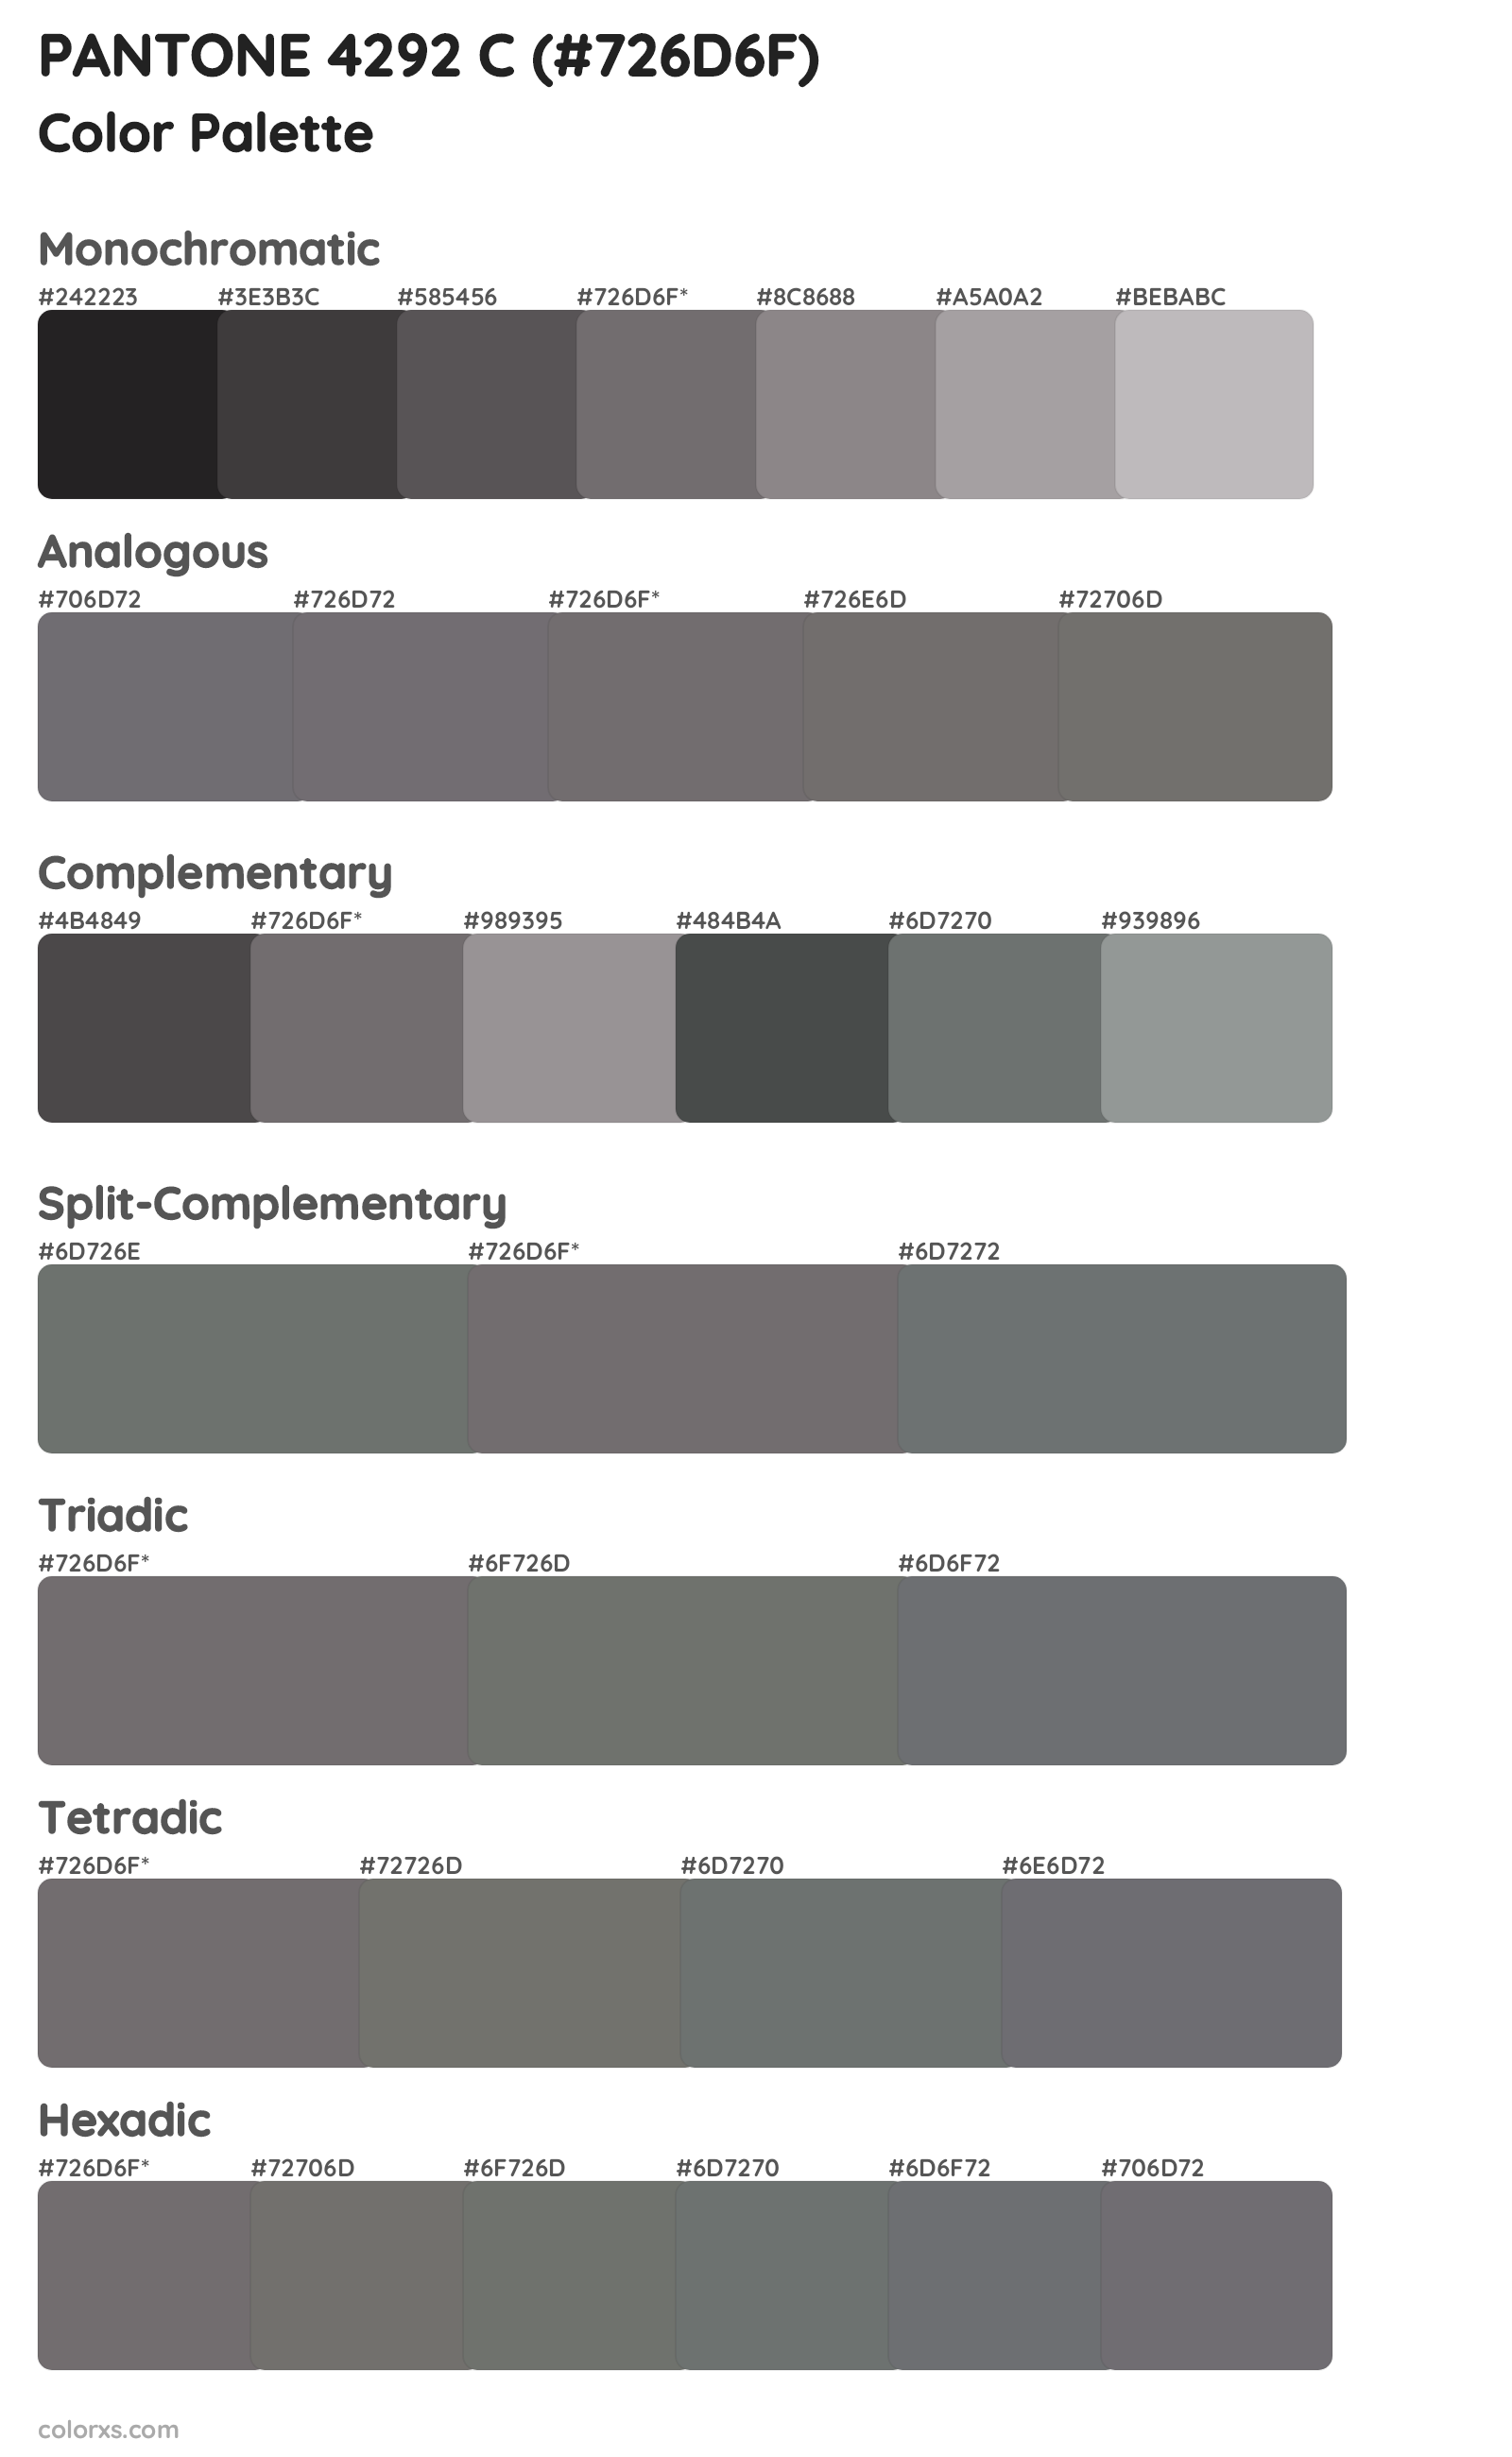 PANTONE 4292 C Color Scheme Palettes